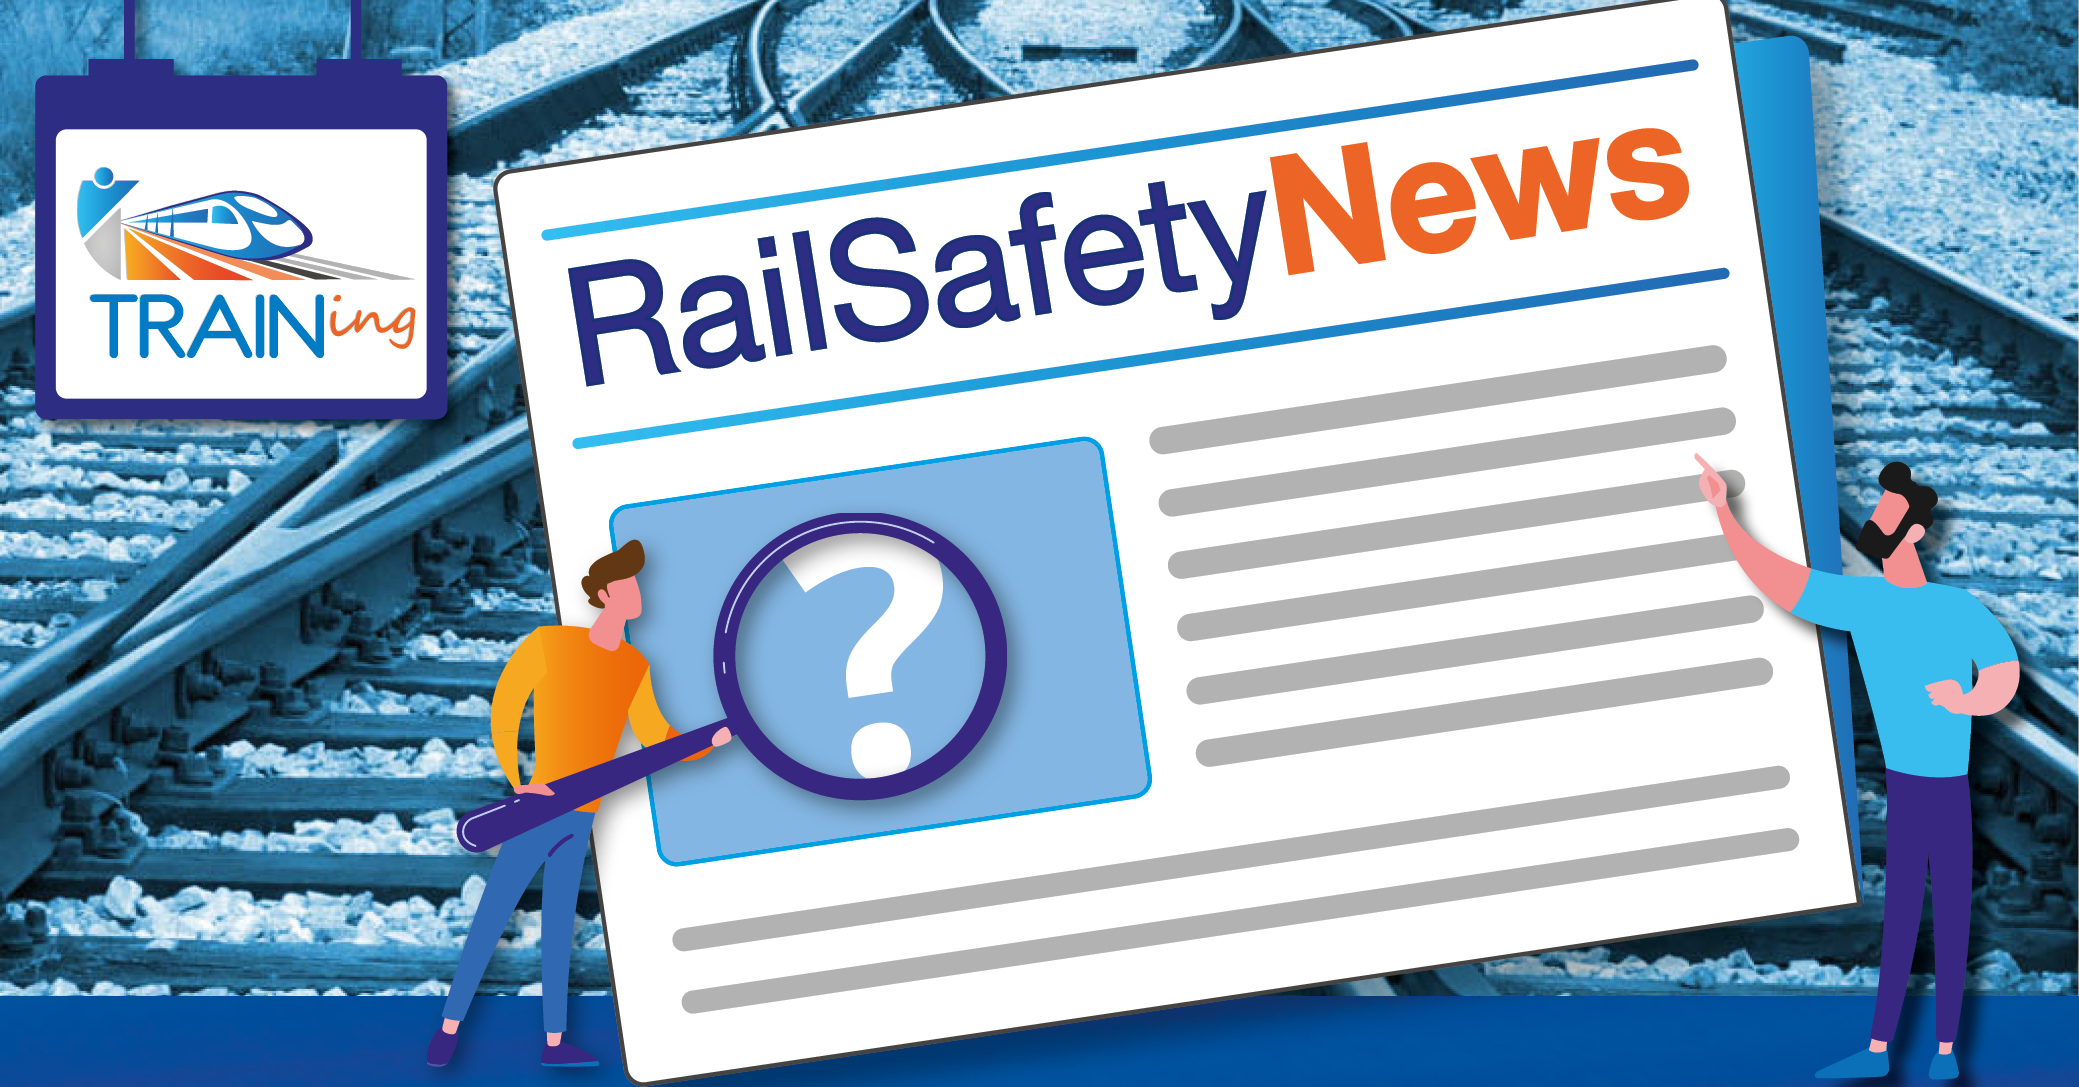 RailSafetyNews n°9